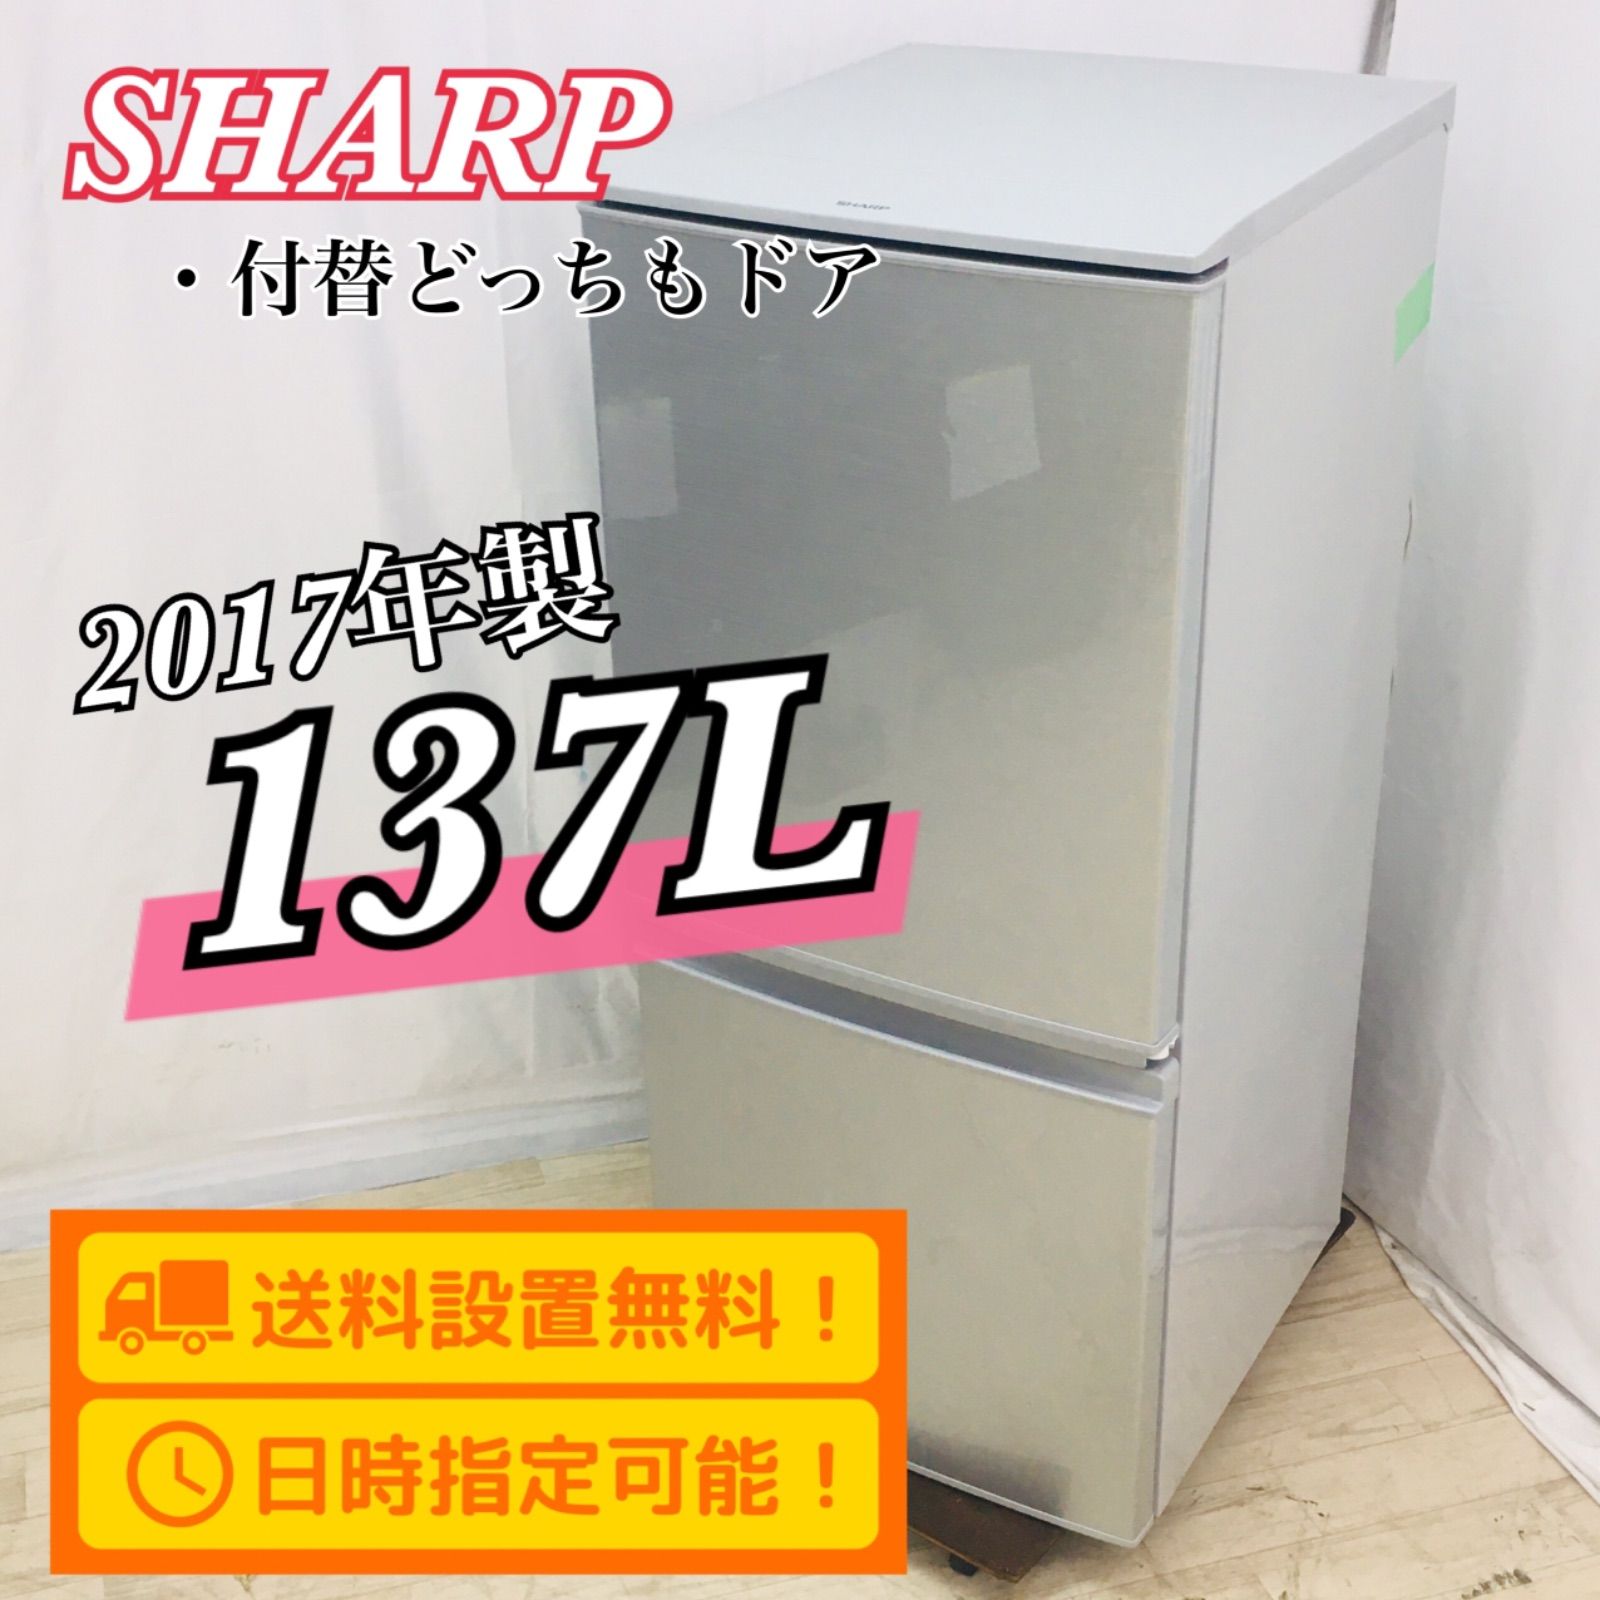 SHARP シャープ 冷蔵庫 137L 2017年製 SJ-D14C-S 付替えどっちもドア